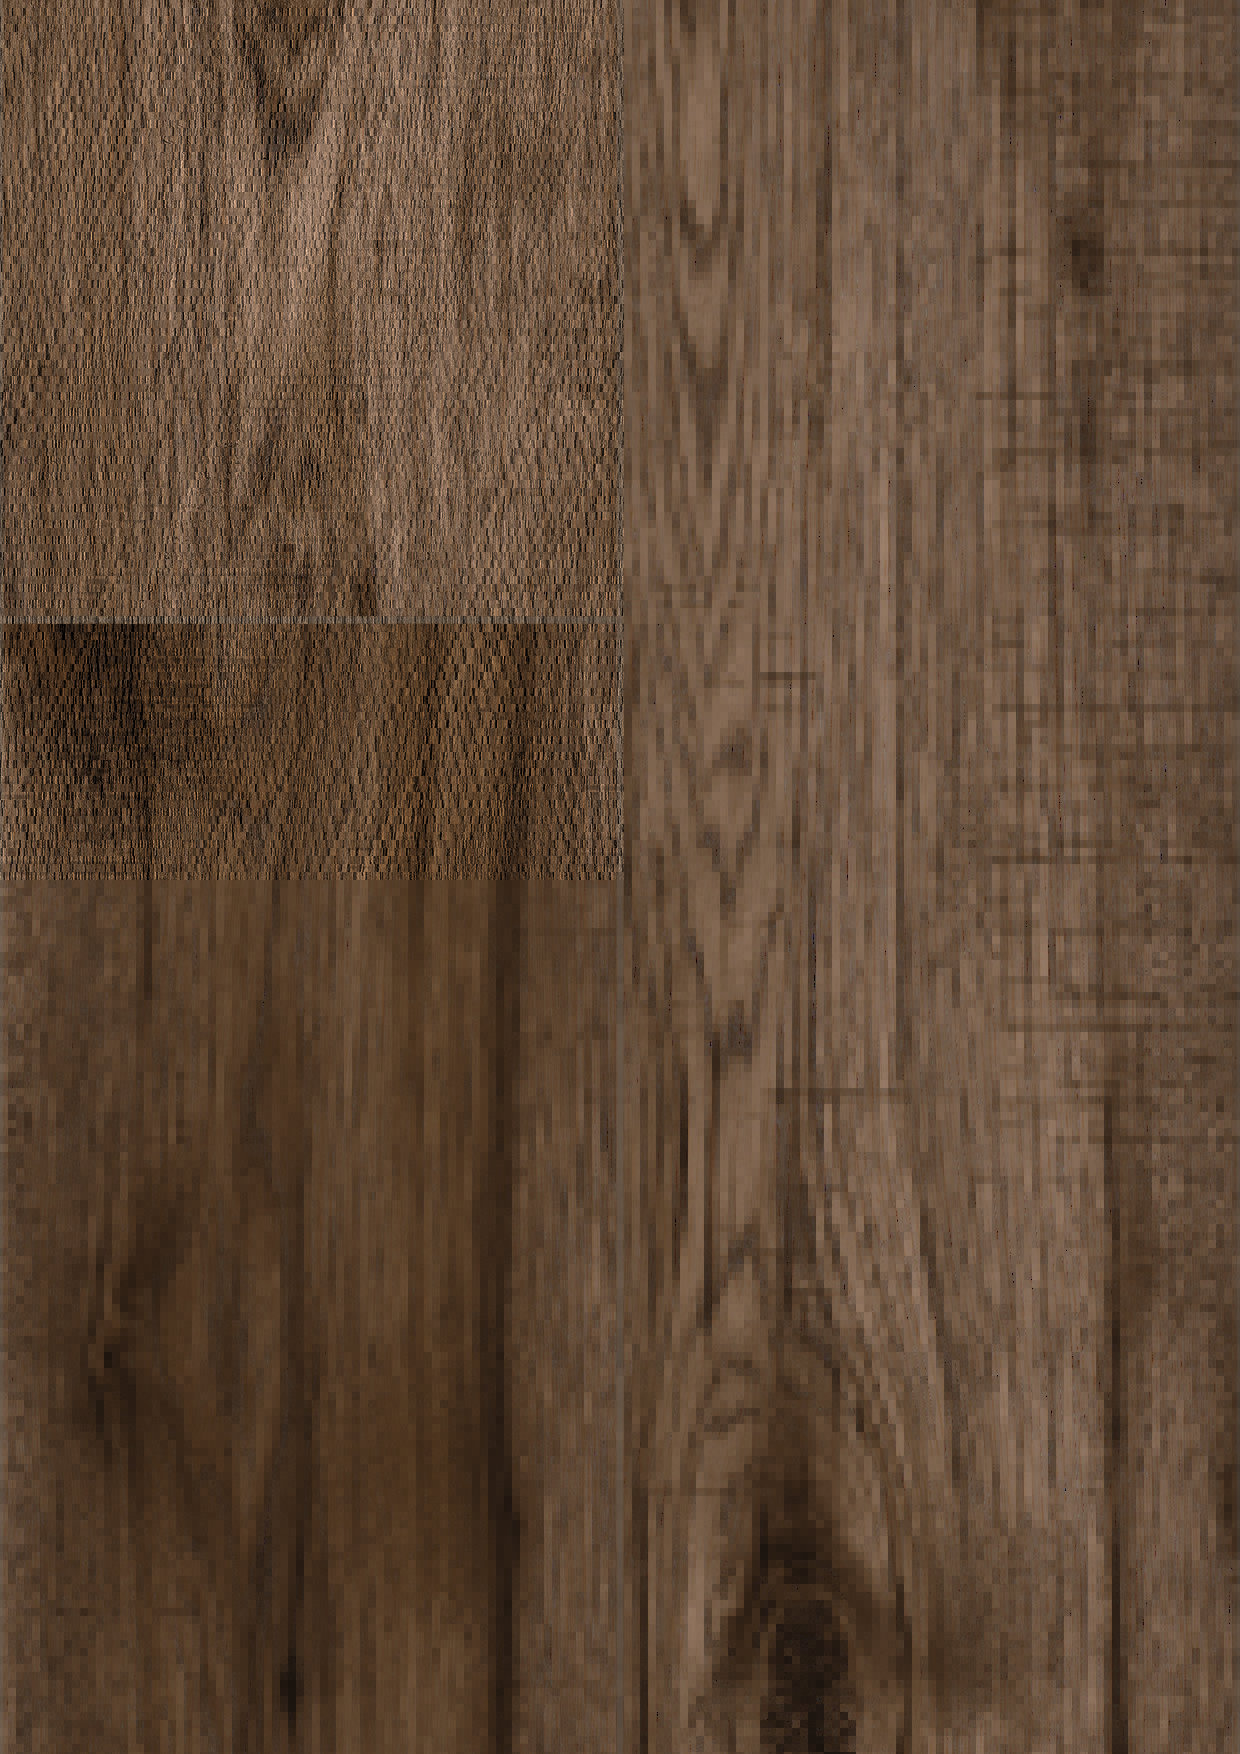 34029 Hickory Valley Sample, Cambridge Nutmeg Engineered Hardwood Flooring